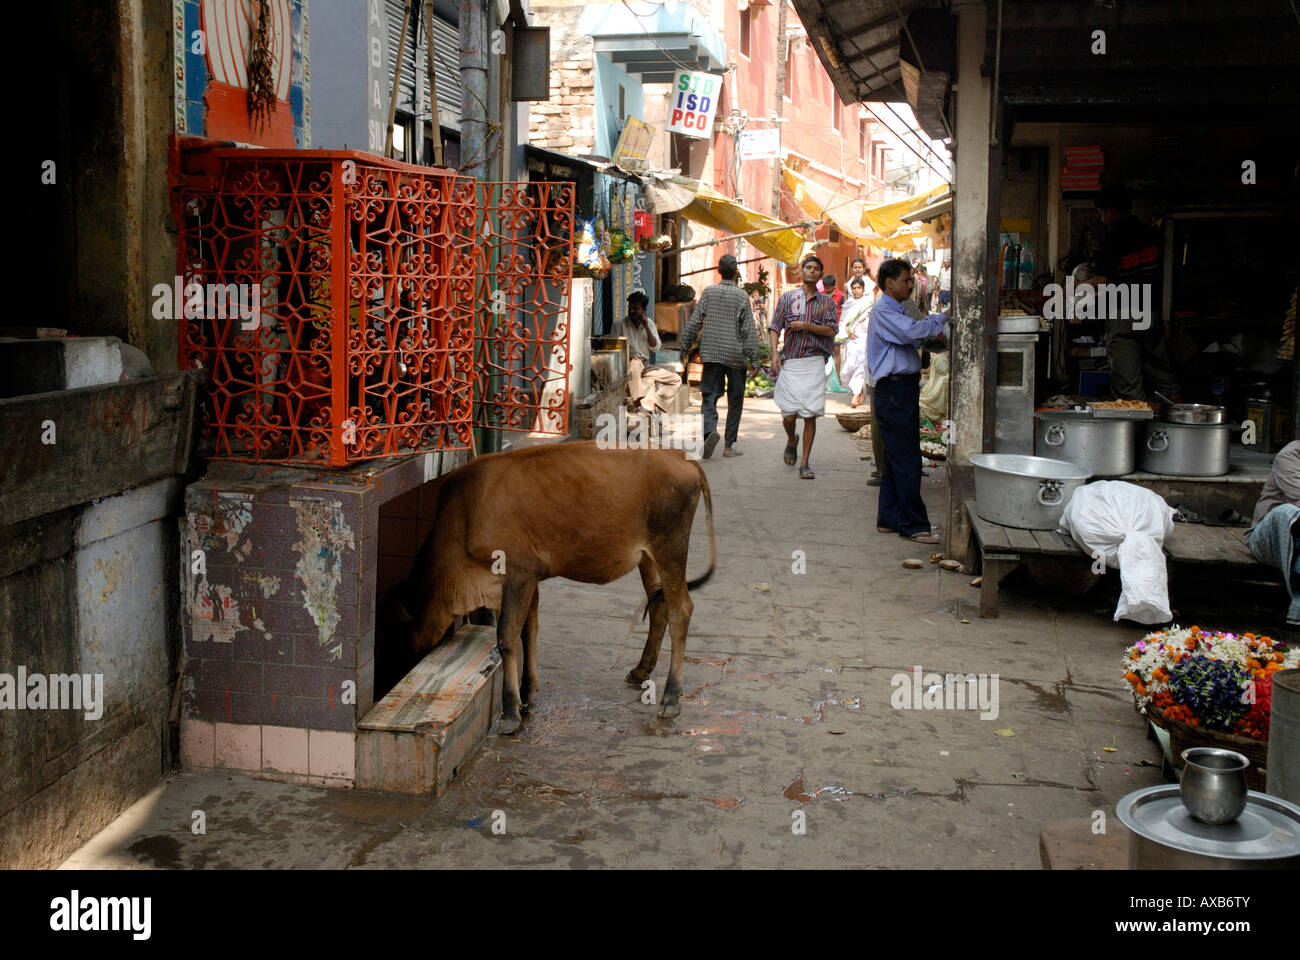 Les charognards vache chez les ordures dans une rue étroite de la vieille ville Varanasi Inde Banque D'Images